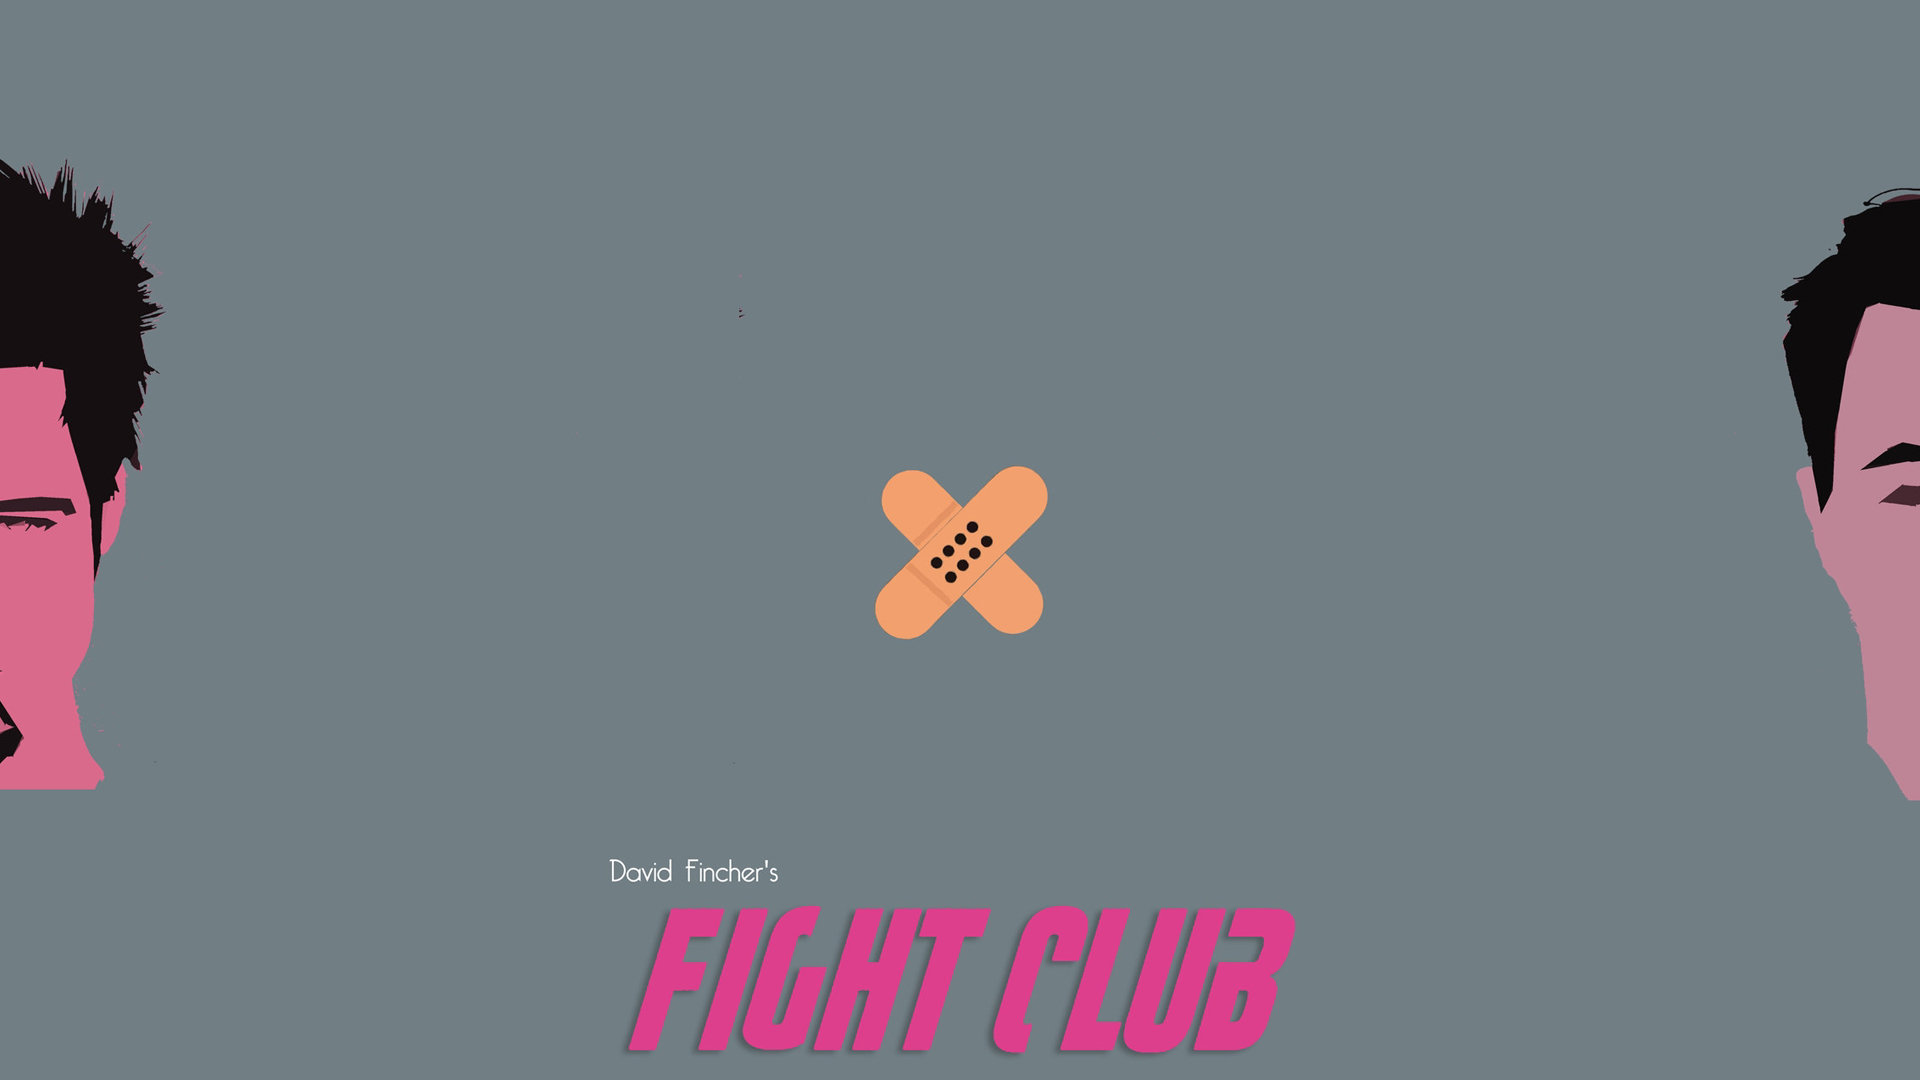 Best Fight Club Wallpaper Id - Illustration - 1920x1080 Wallpaper -  